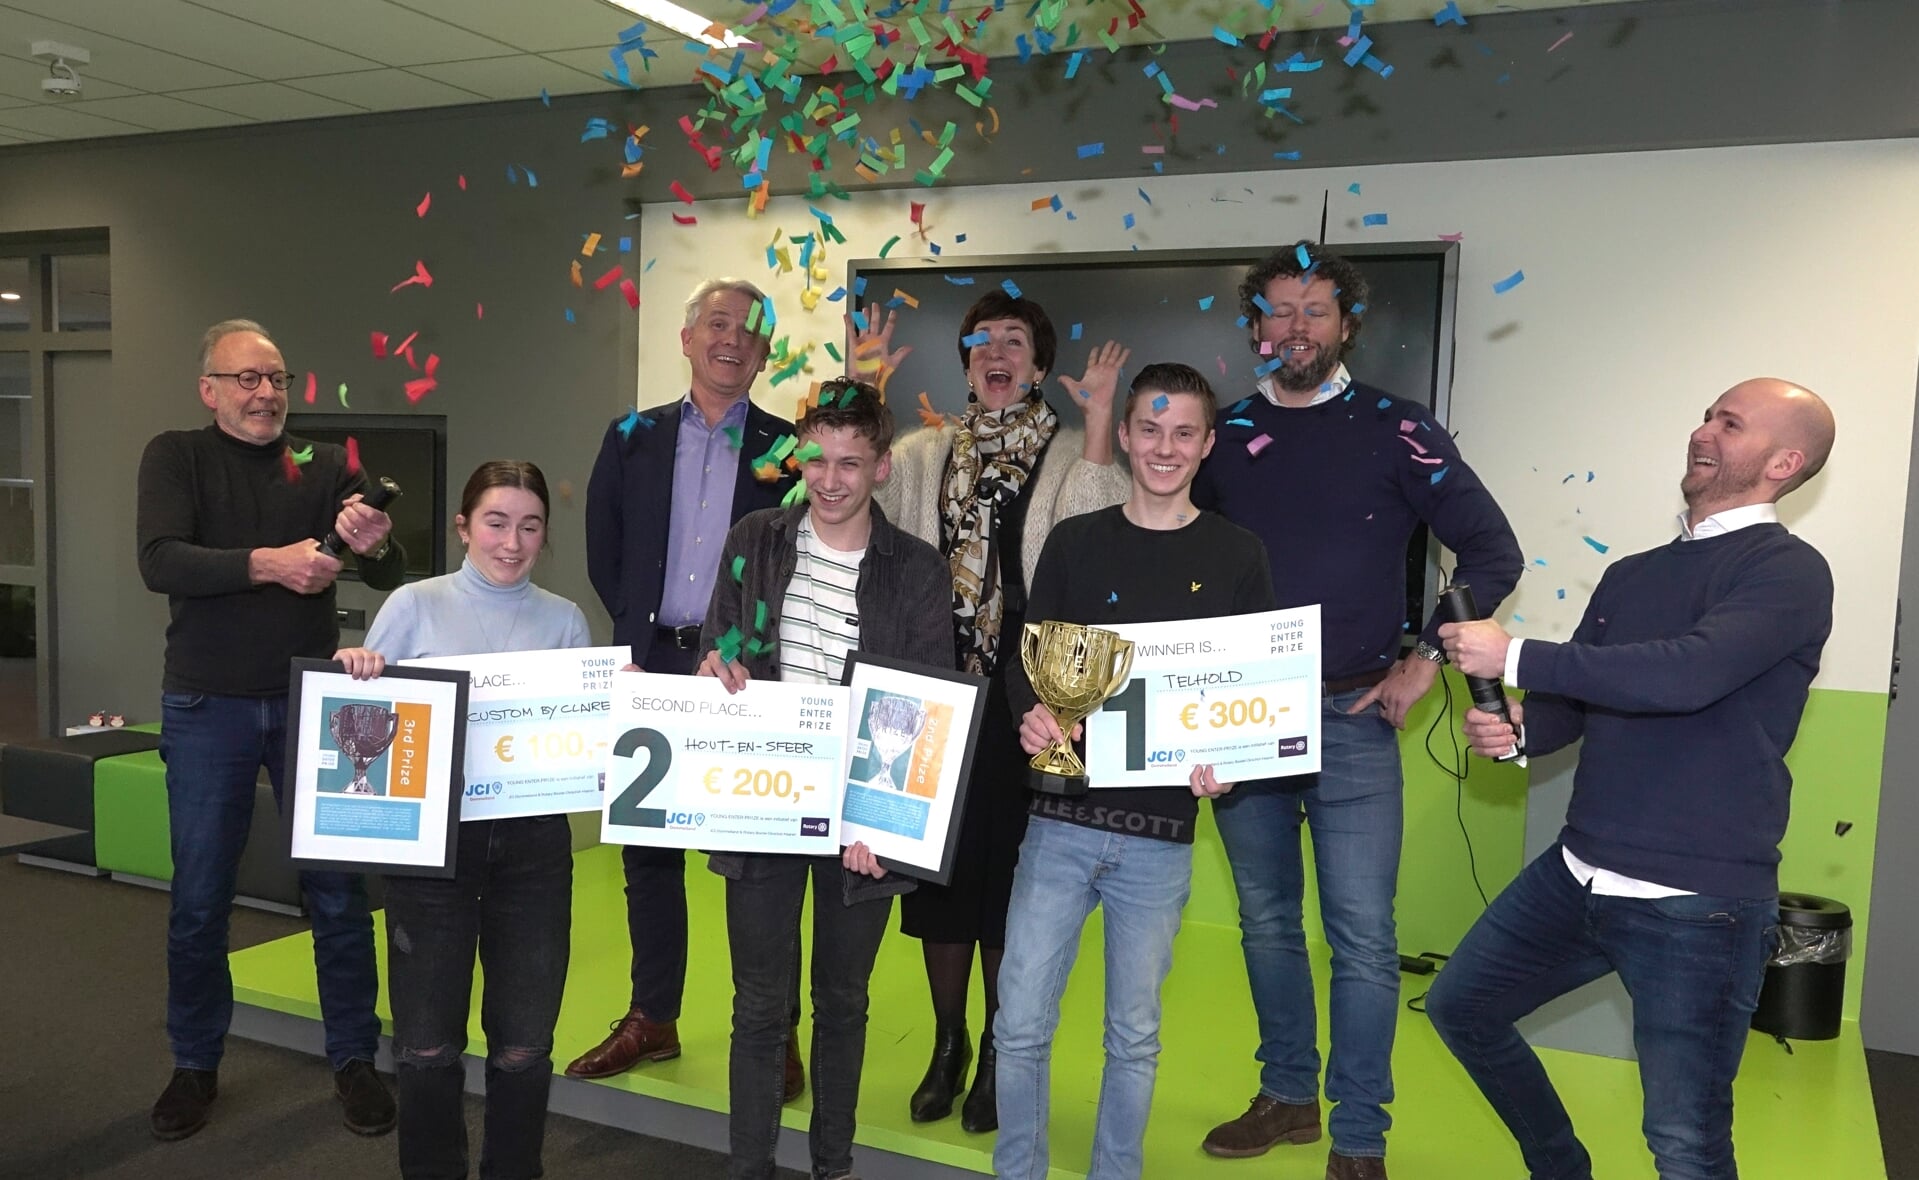 Young EnterPrize werd dinsdag feestelijk afgesloten met de prijswinnaars Sjoerd Kloosterman (1), Ties van Pinxteren (2) en Claire van de Zande (3).